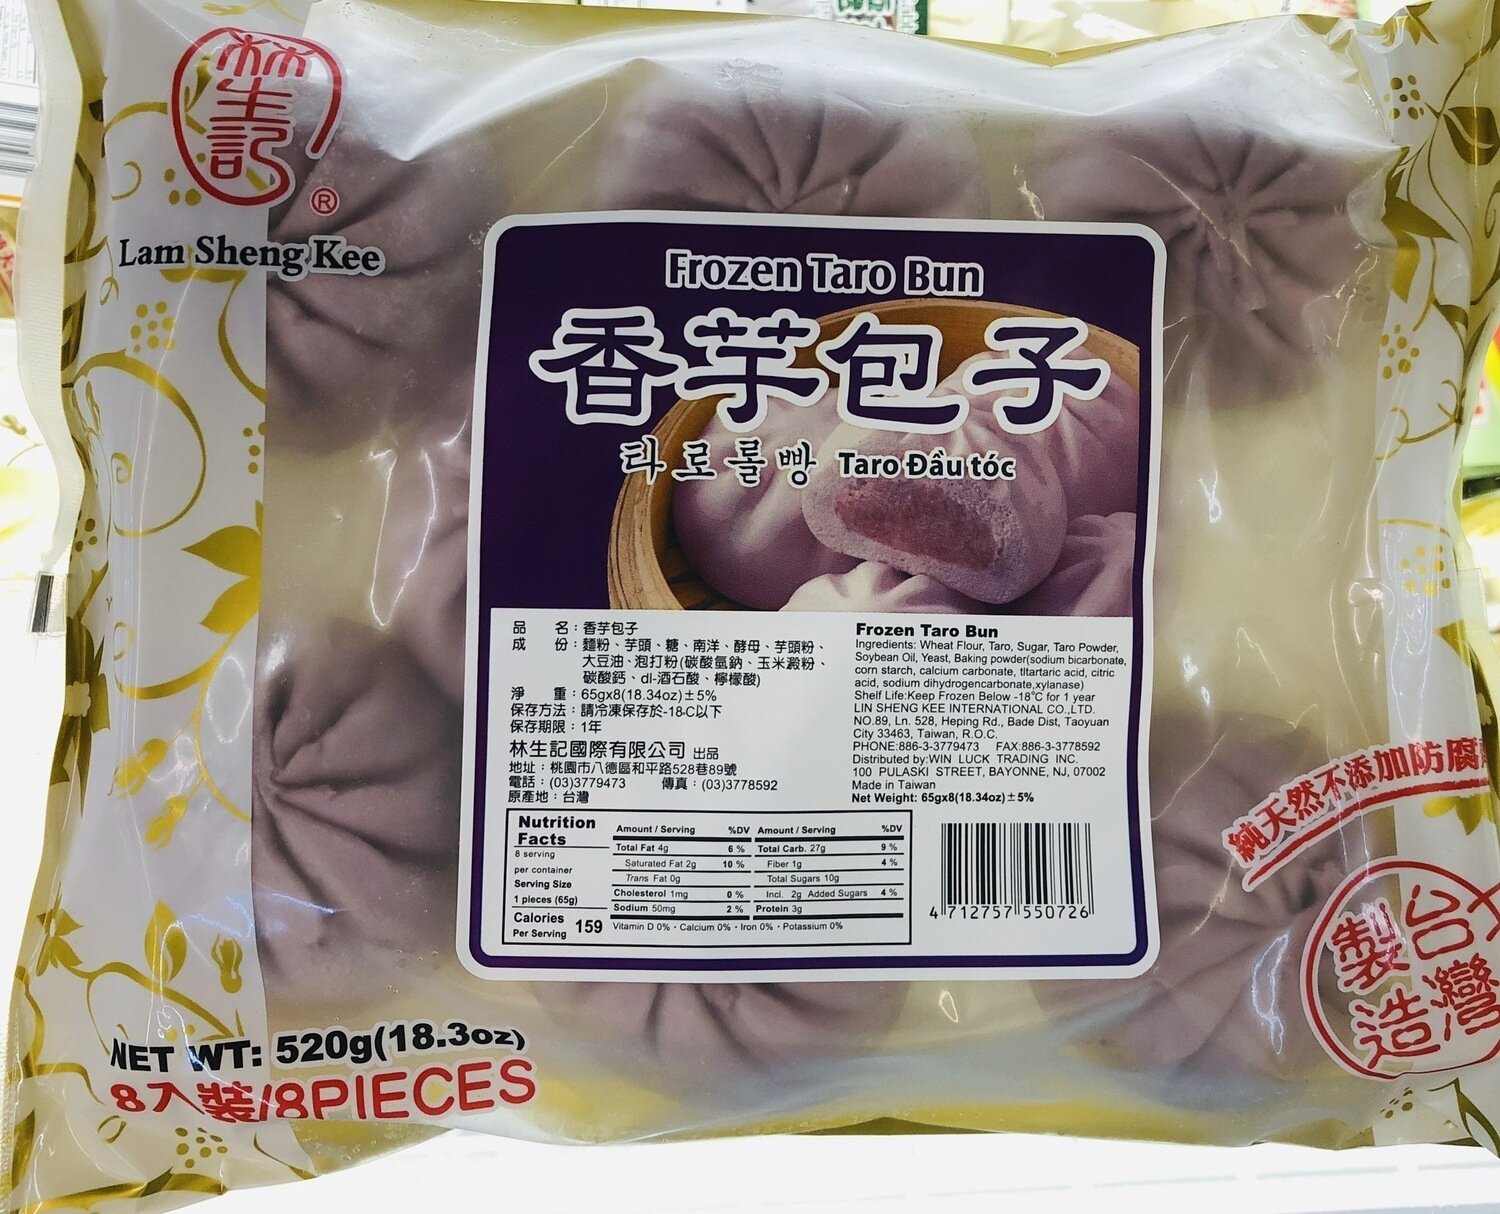 林生记香芋包子 LamShengKee Frozen Taro Bun​～520g(18.3oz)​